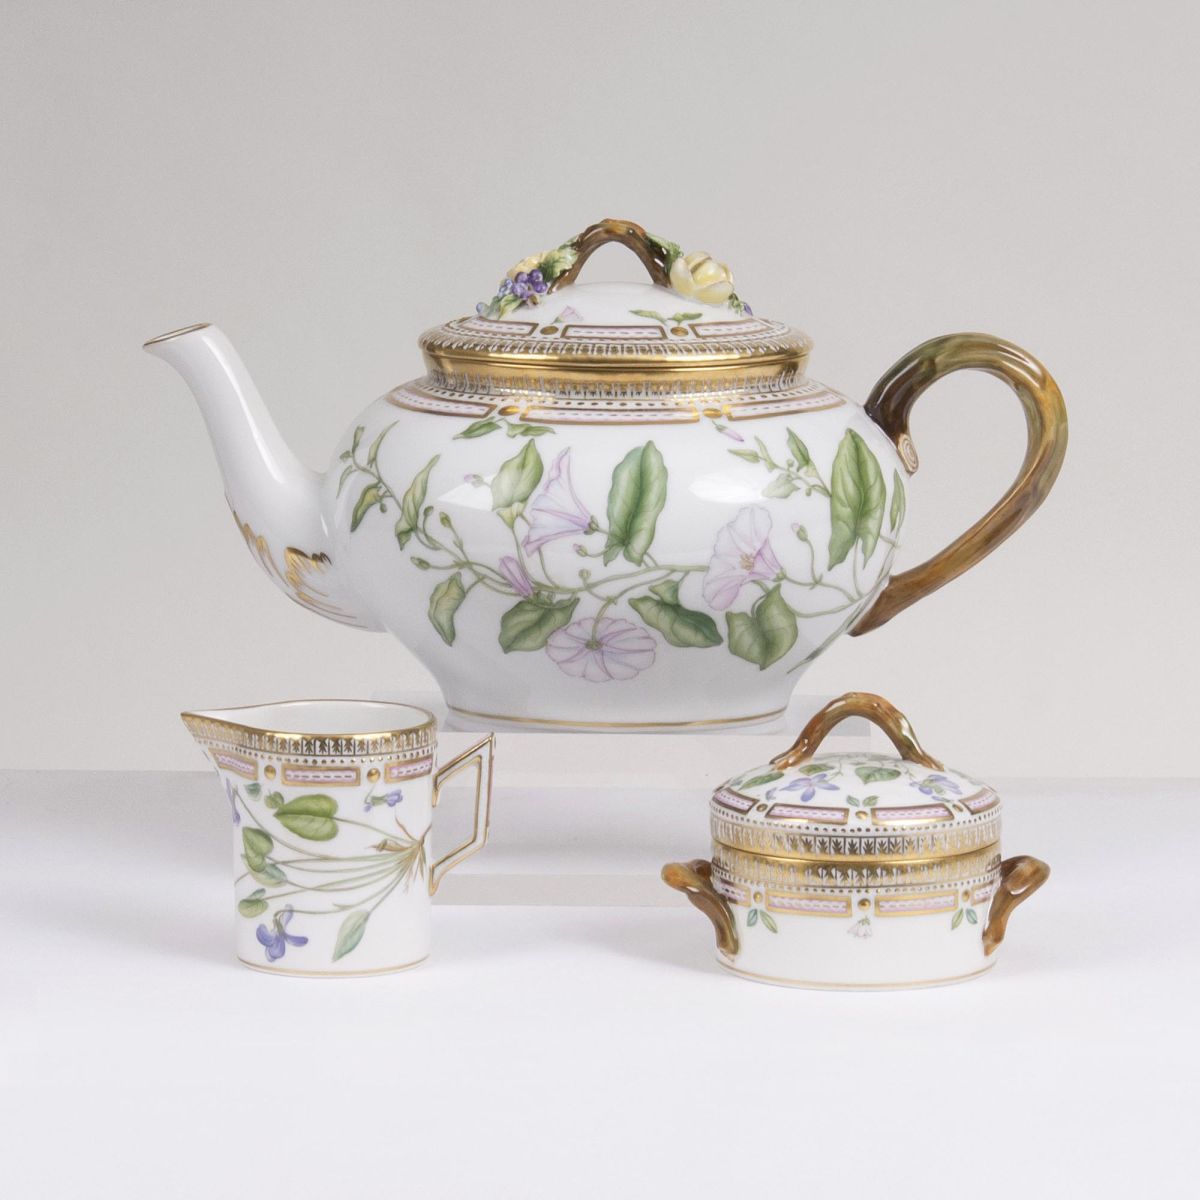 A Three-part Flora Danica Set of a Teapot, Milk Jug and Sugar Box